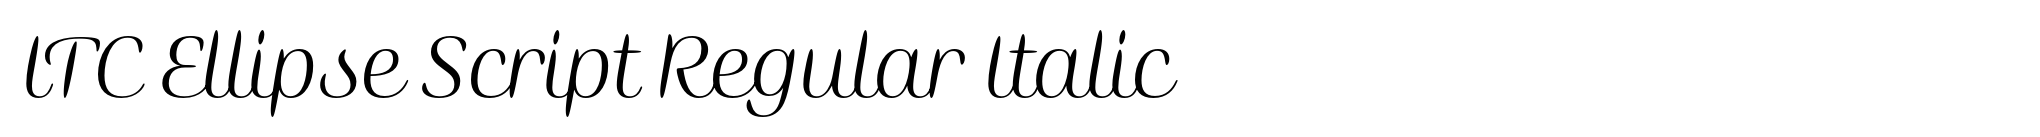 ITC Ellipse Script Regular Italic image